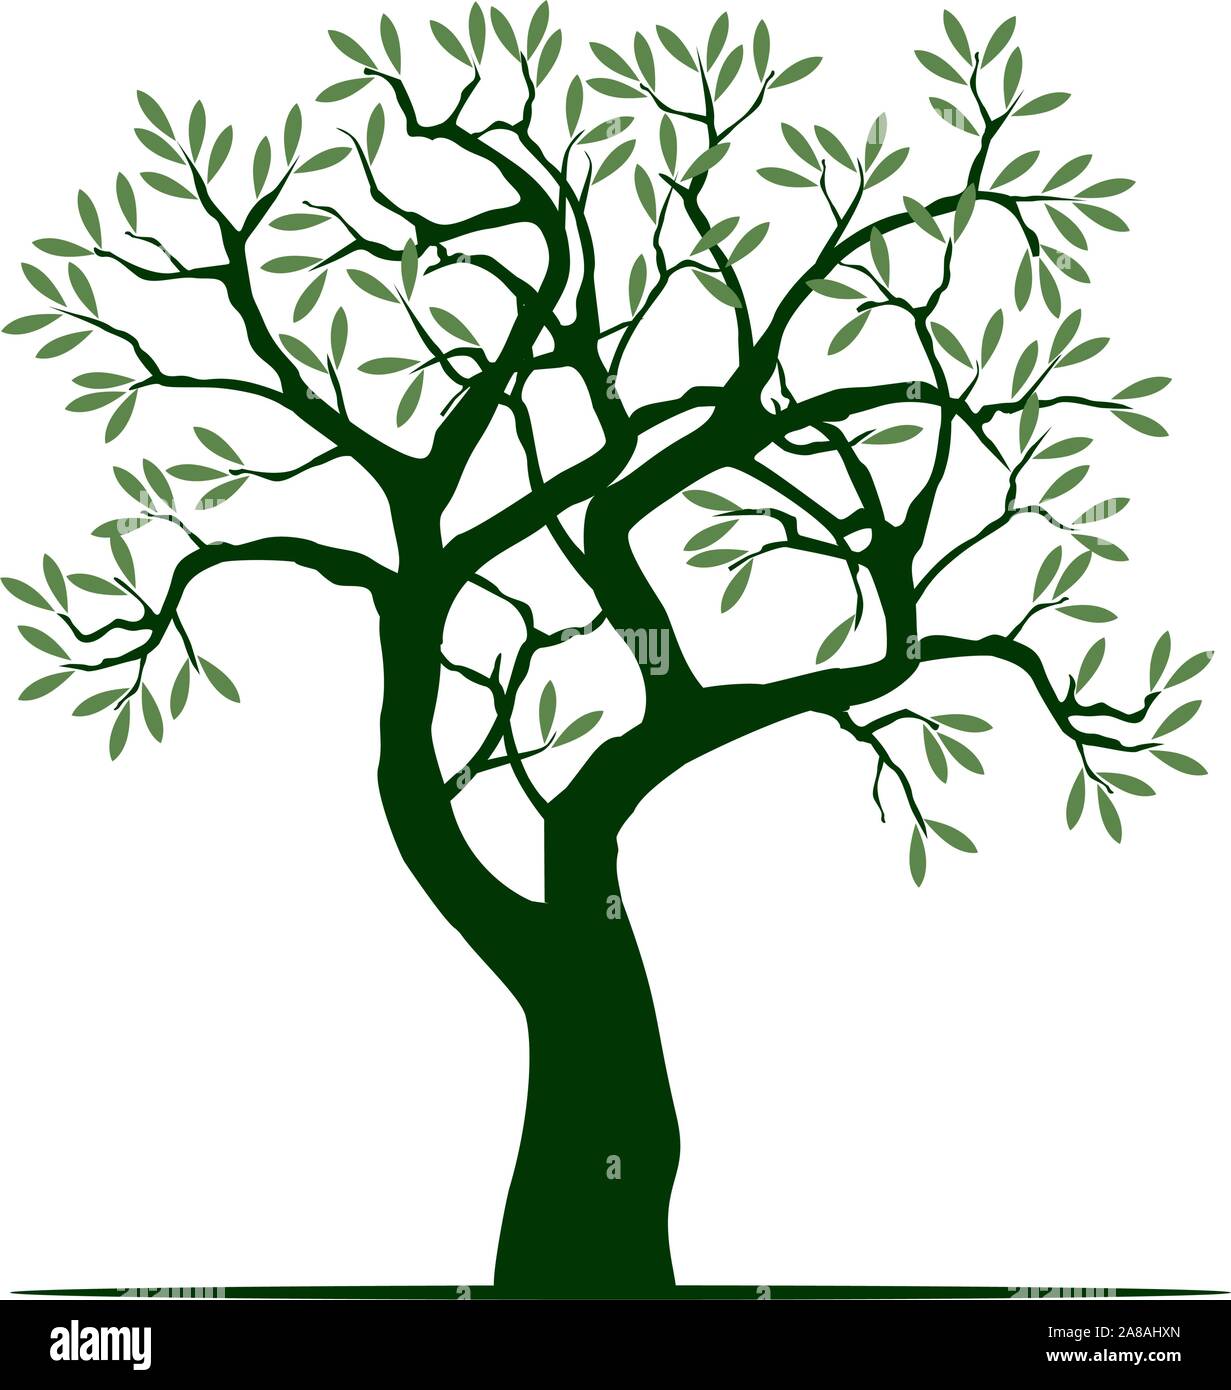 Grün Isoliert Olivenbaum auf weißem Hintergrund. Vector Illustration und Konzept. Pflanze im Garten. Stock Vektor